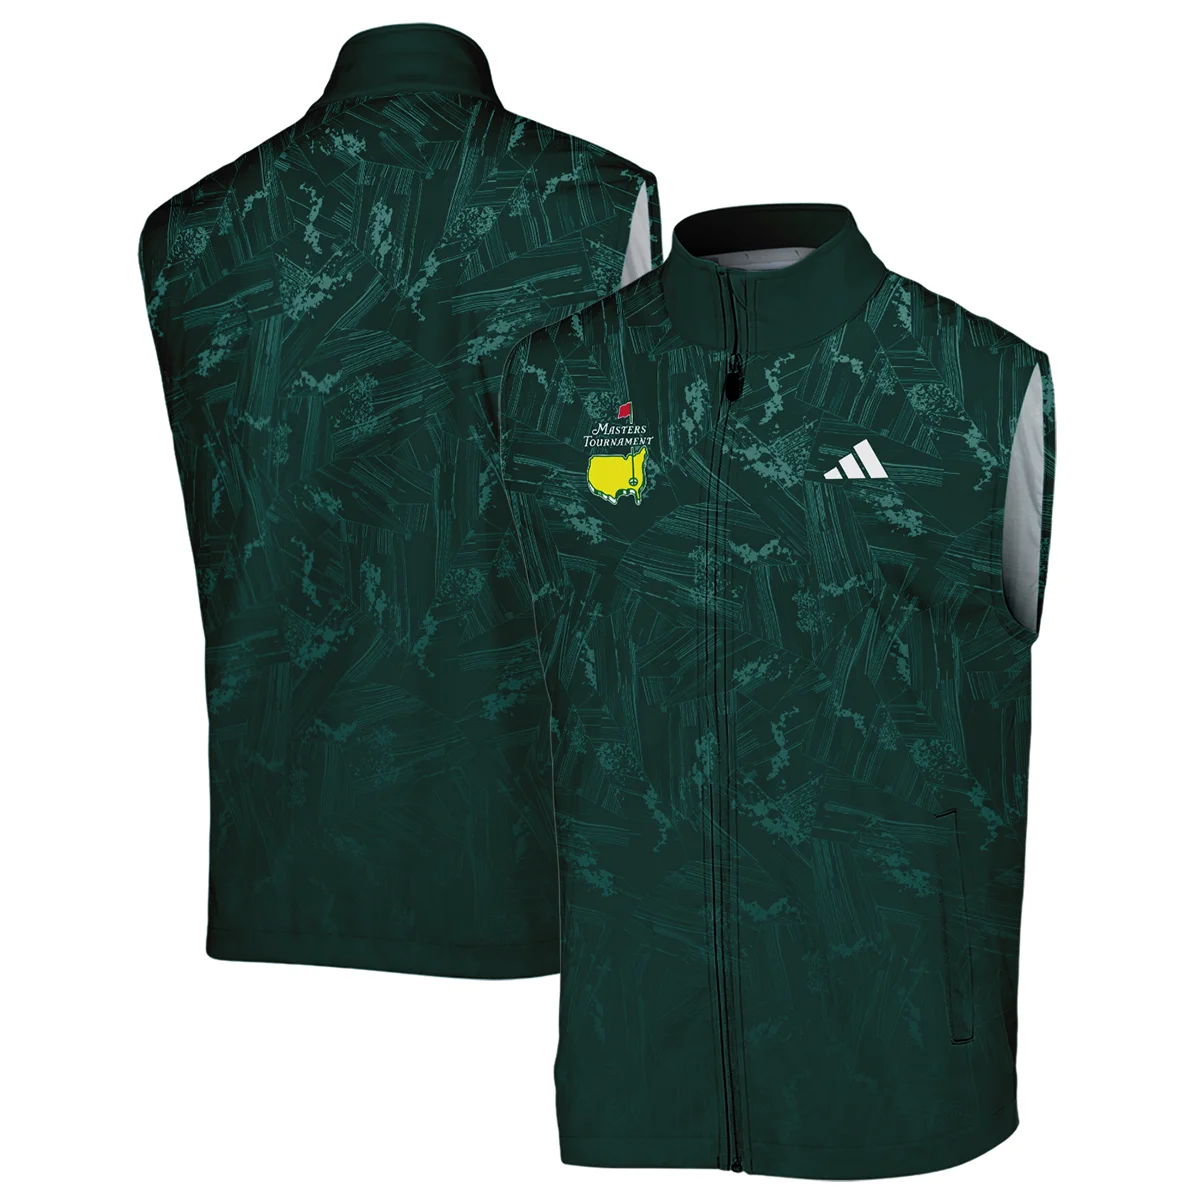 Dark Green Background Masters Tournament Adidas Bomber Jacket Style Classic Bomber Jacket